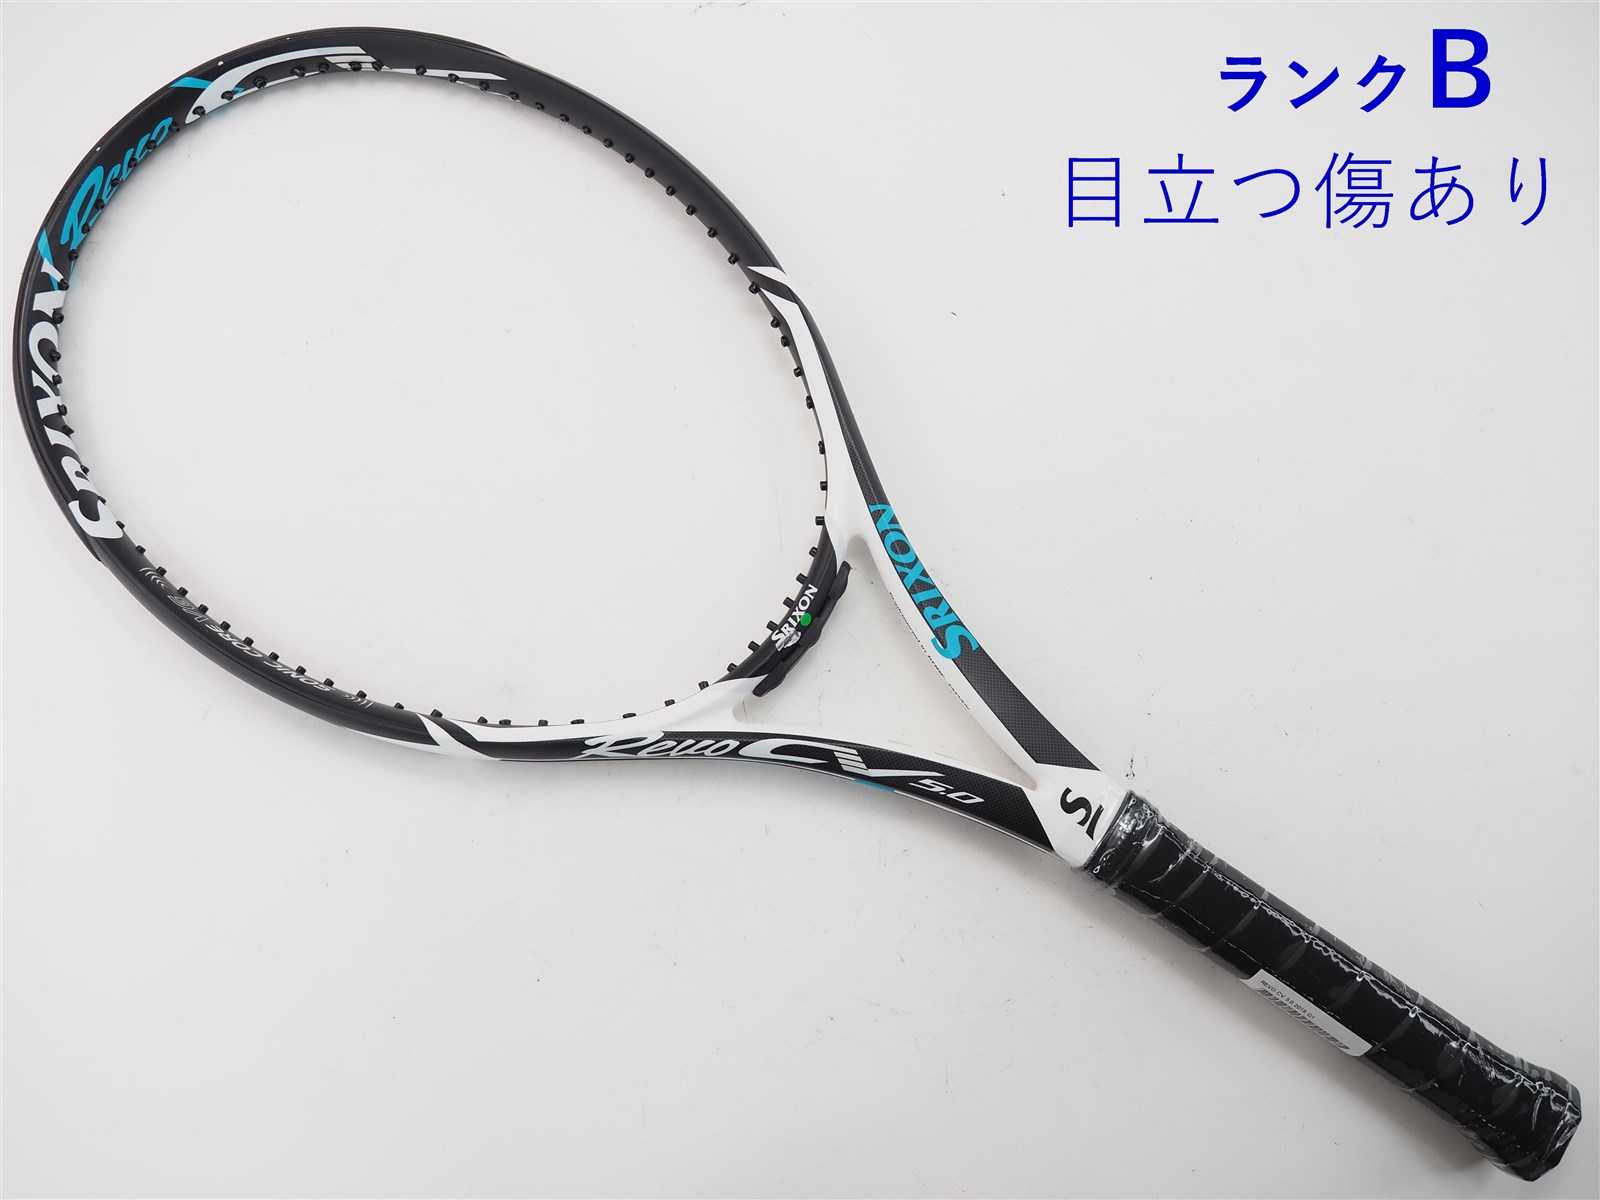 テニスラケット スリクソン レヴォ シーブイ3.0 エフ ツアー 2018年モデル (G2)SRIXON REVO CV3.0 F-TOUR 2018